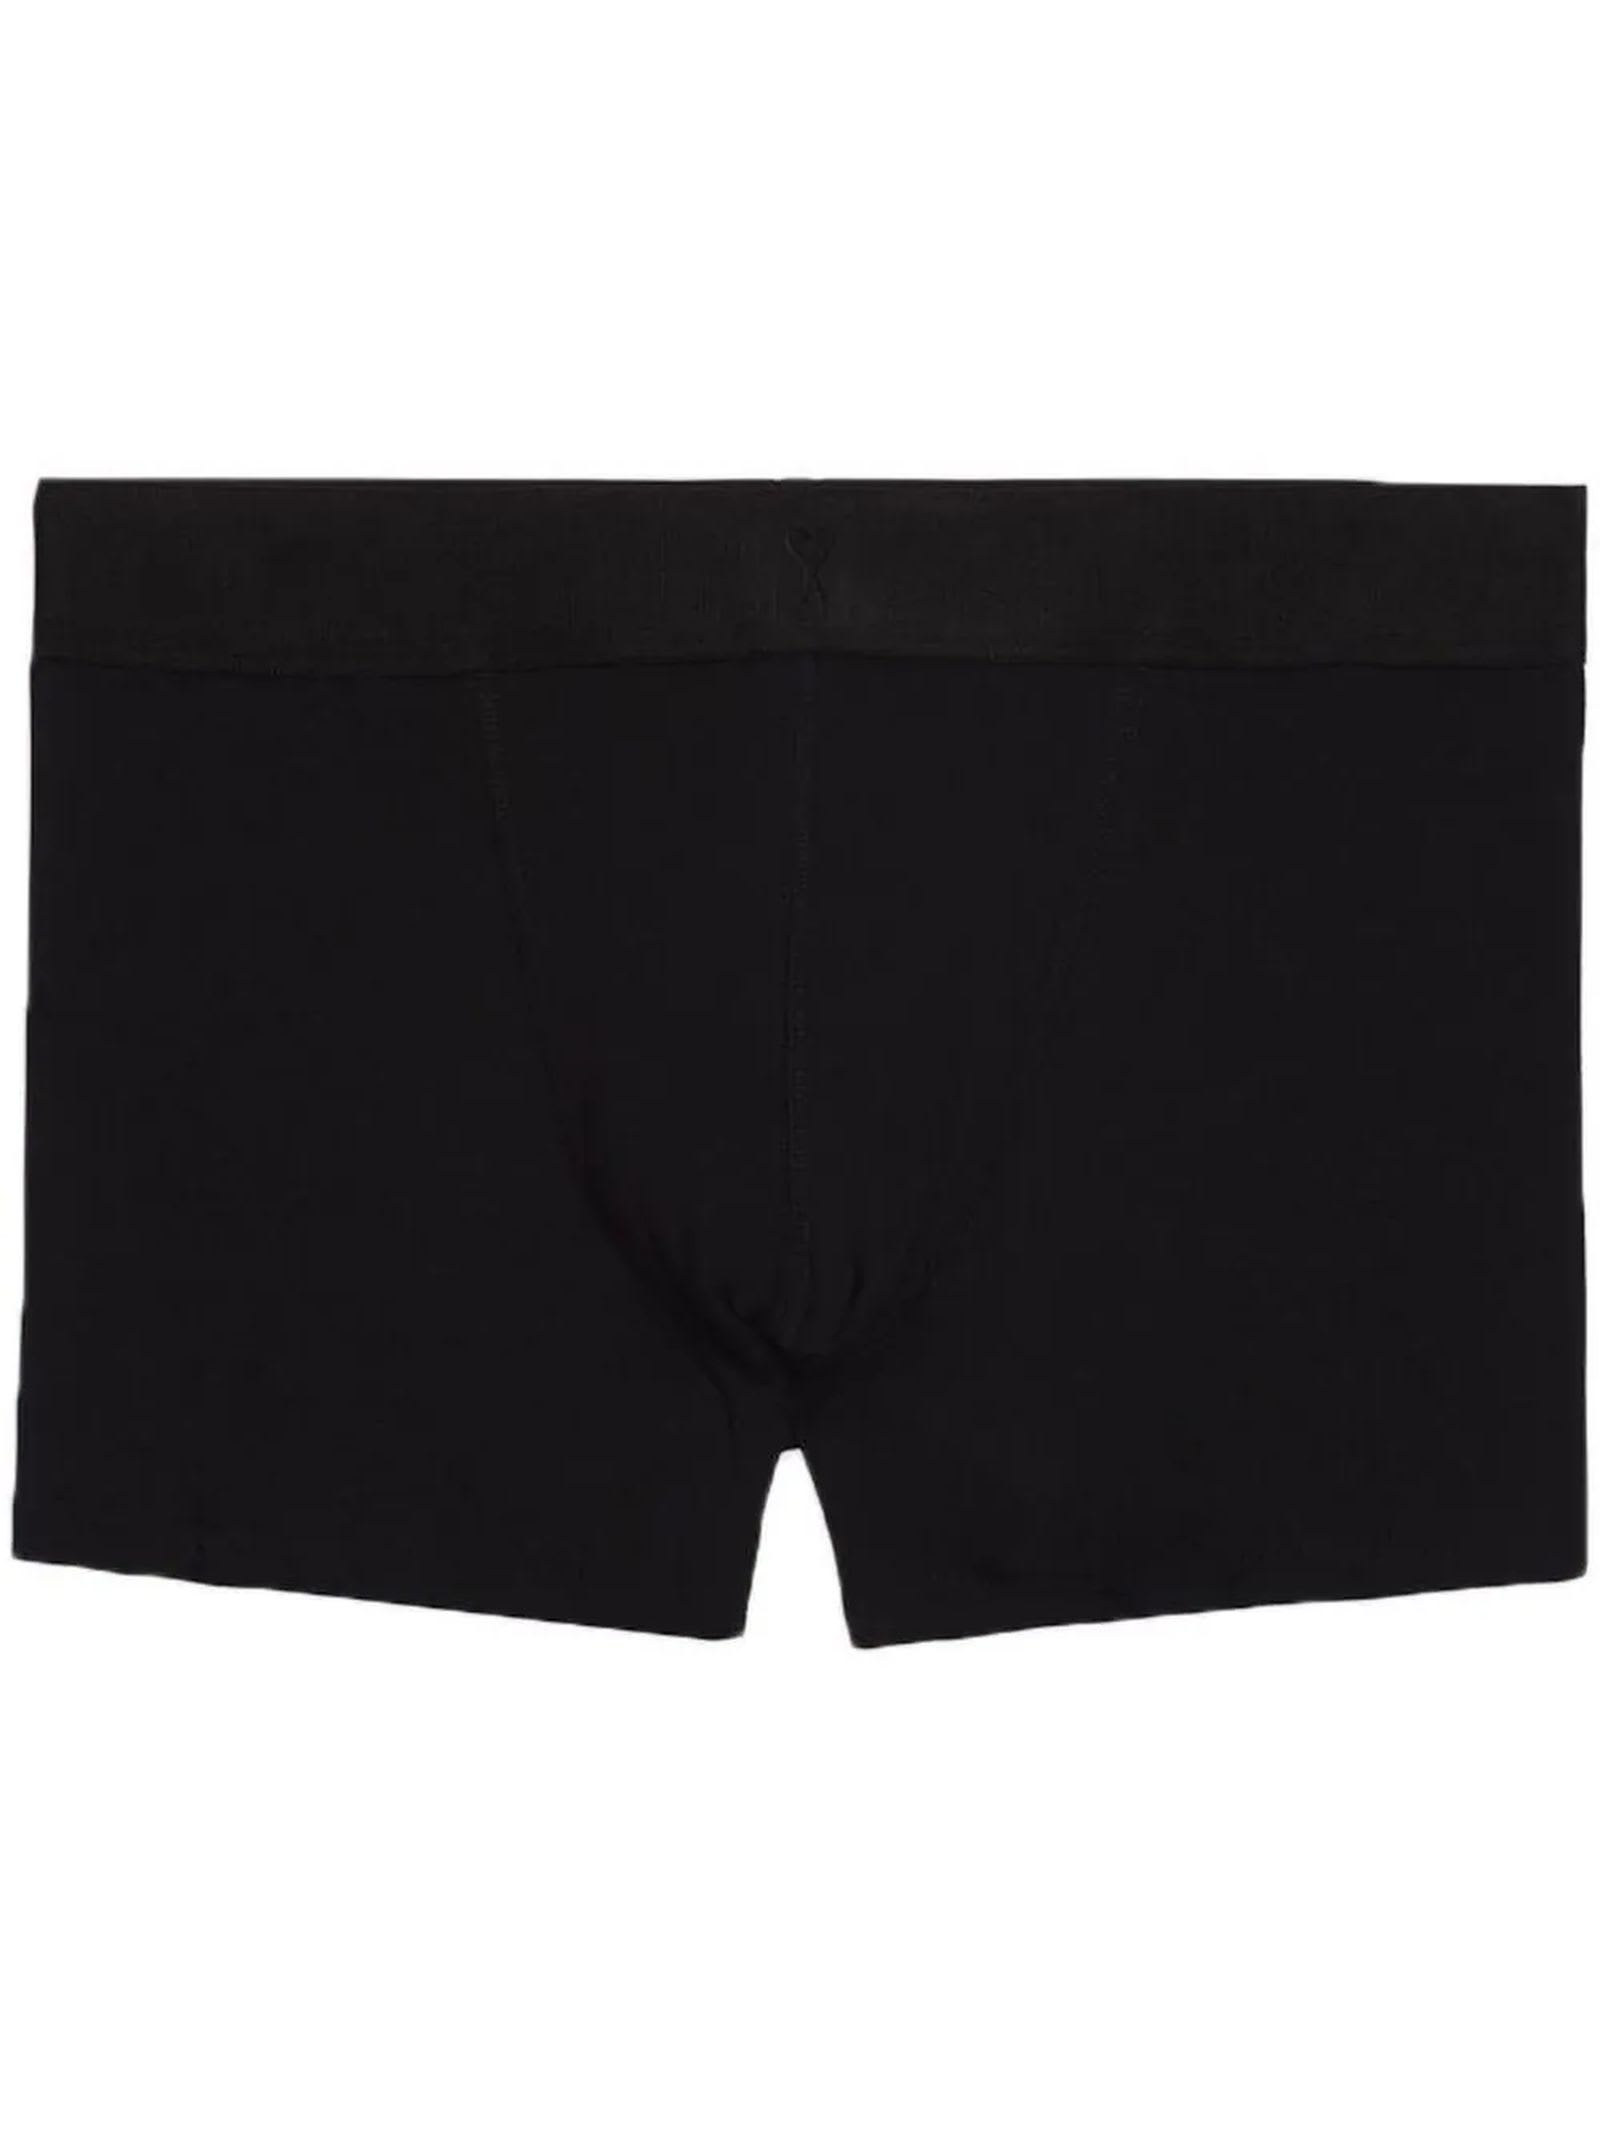 Ami Underwear Black